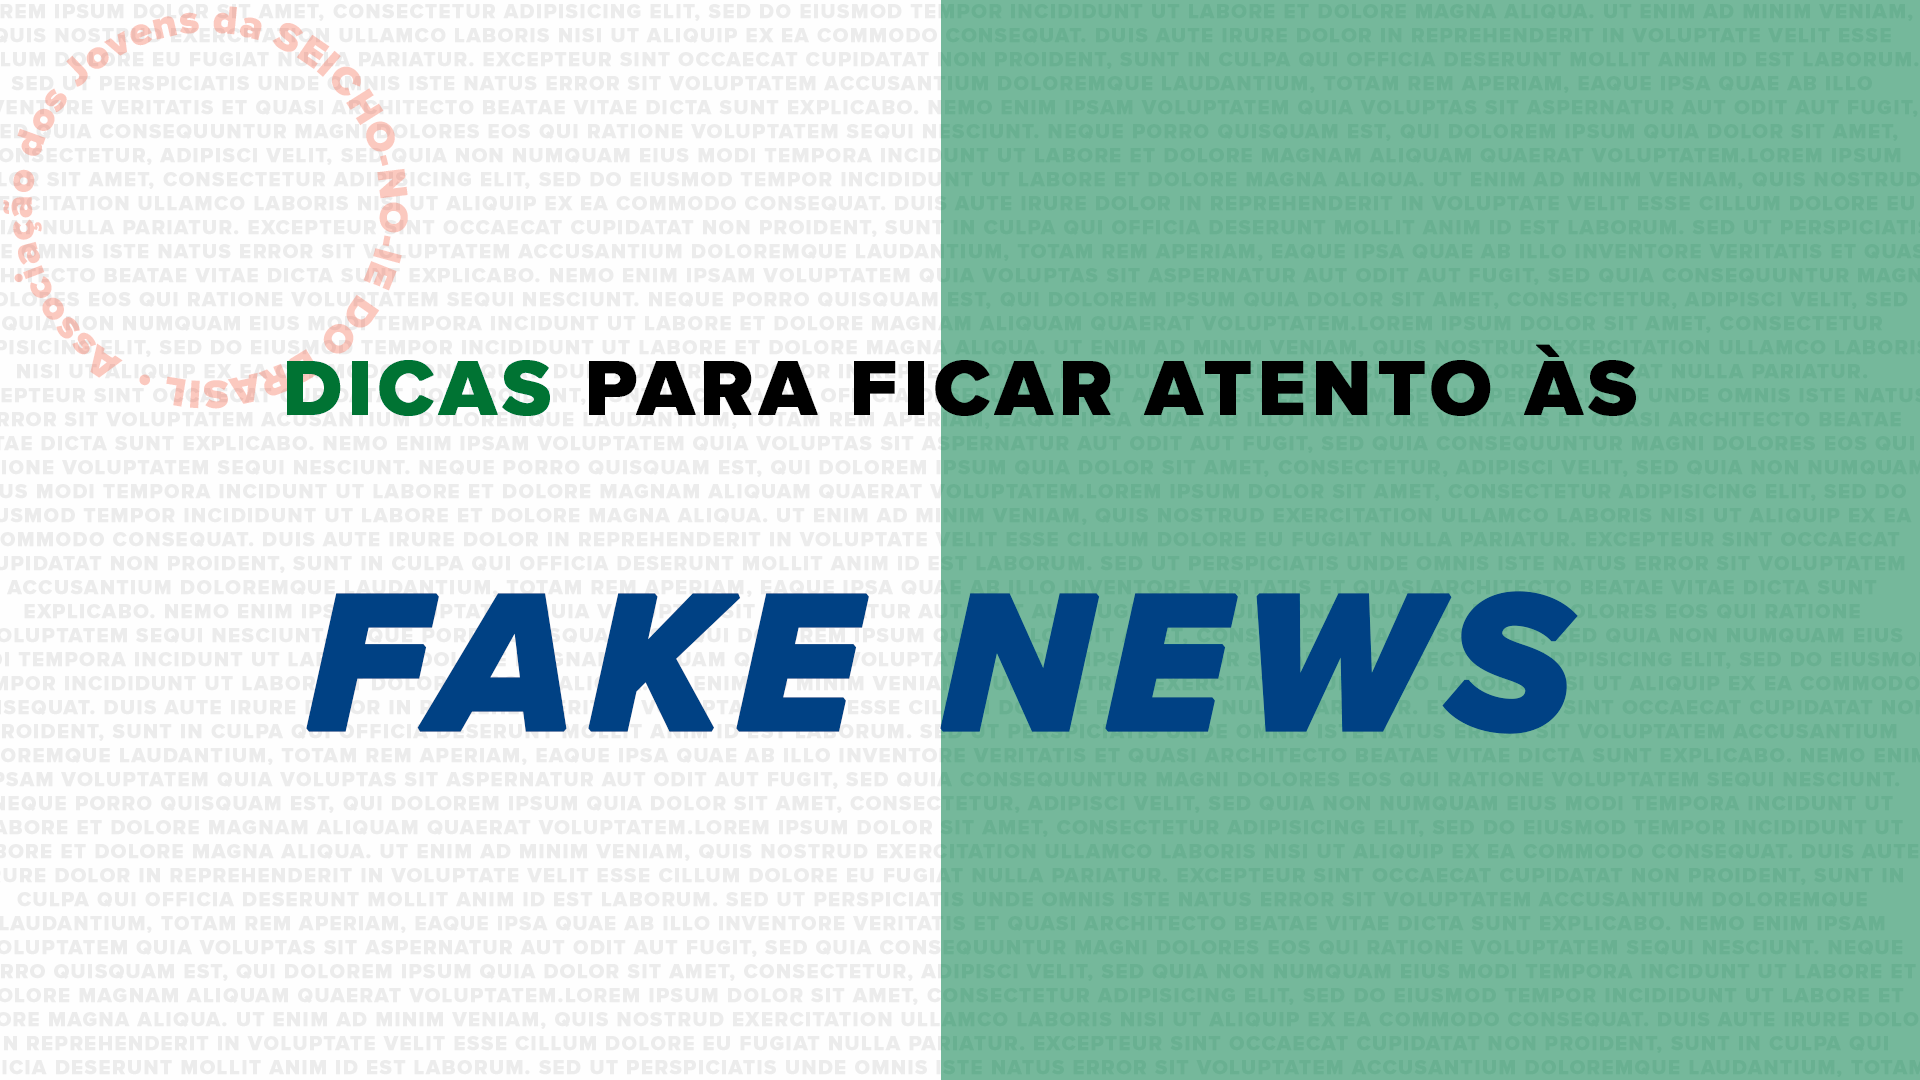 09 FakeNews Dicas para ficar atento às fake news Texto por Isabela Silveira da Silva, Regional SP-LAPA.